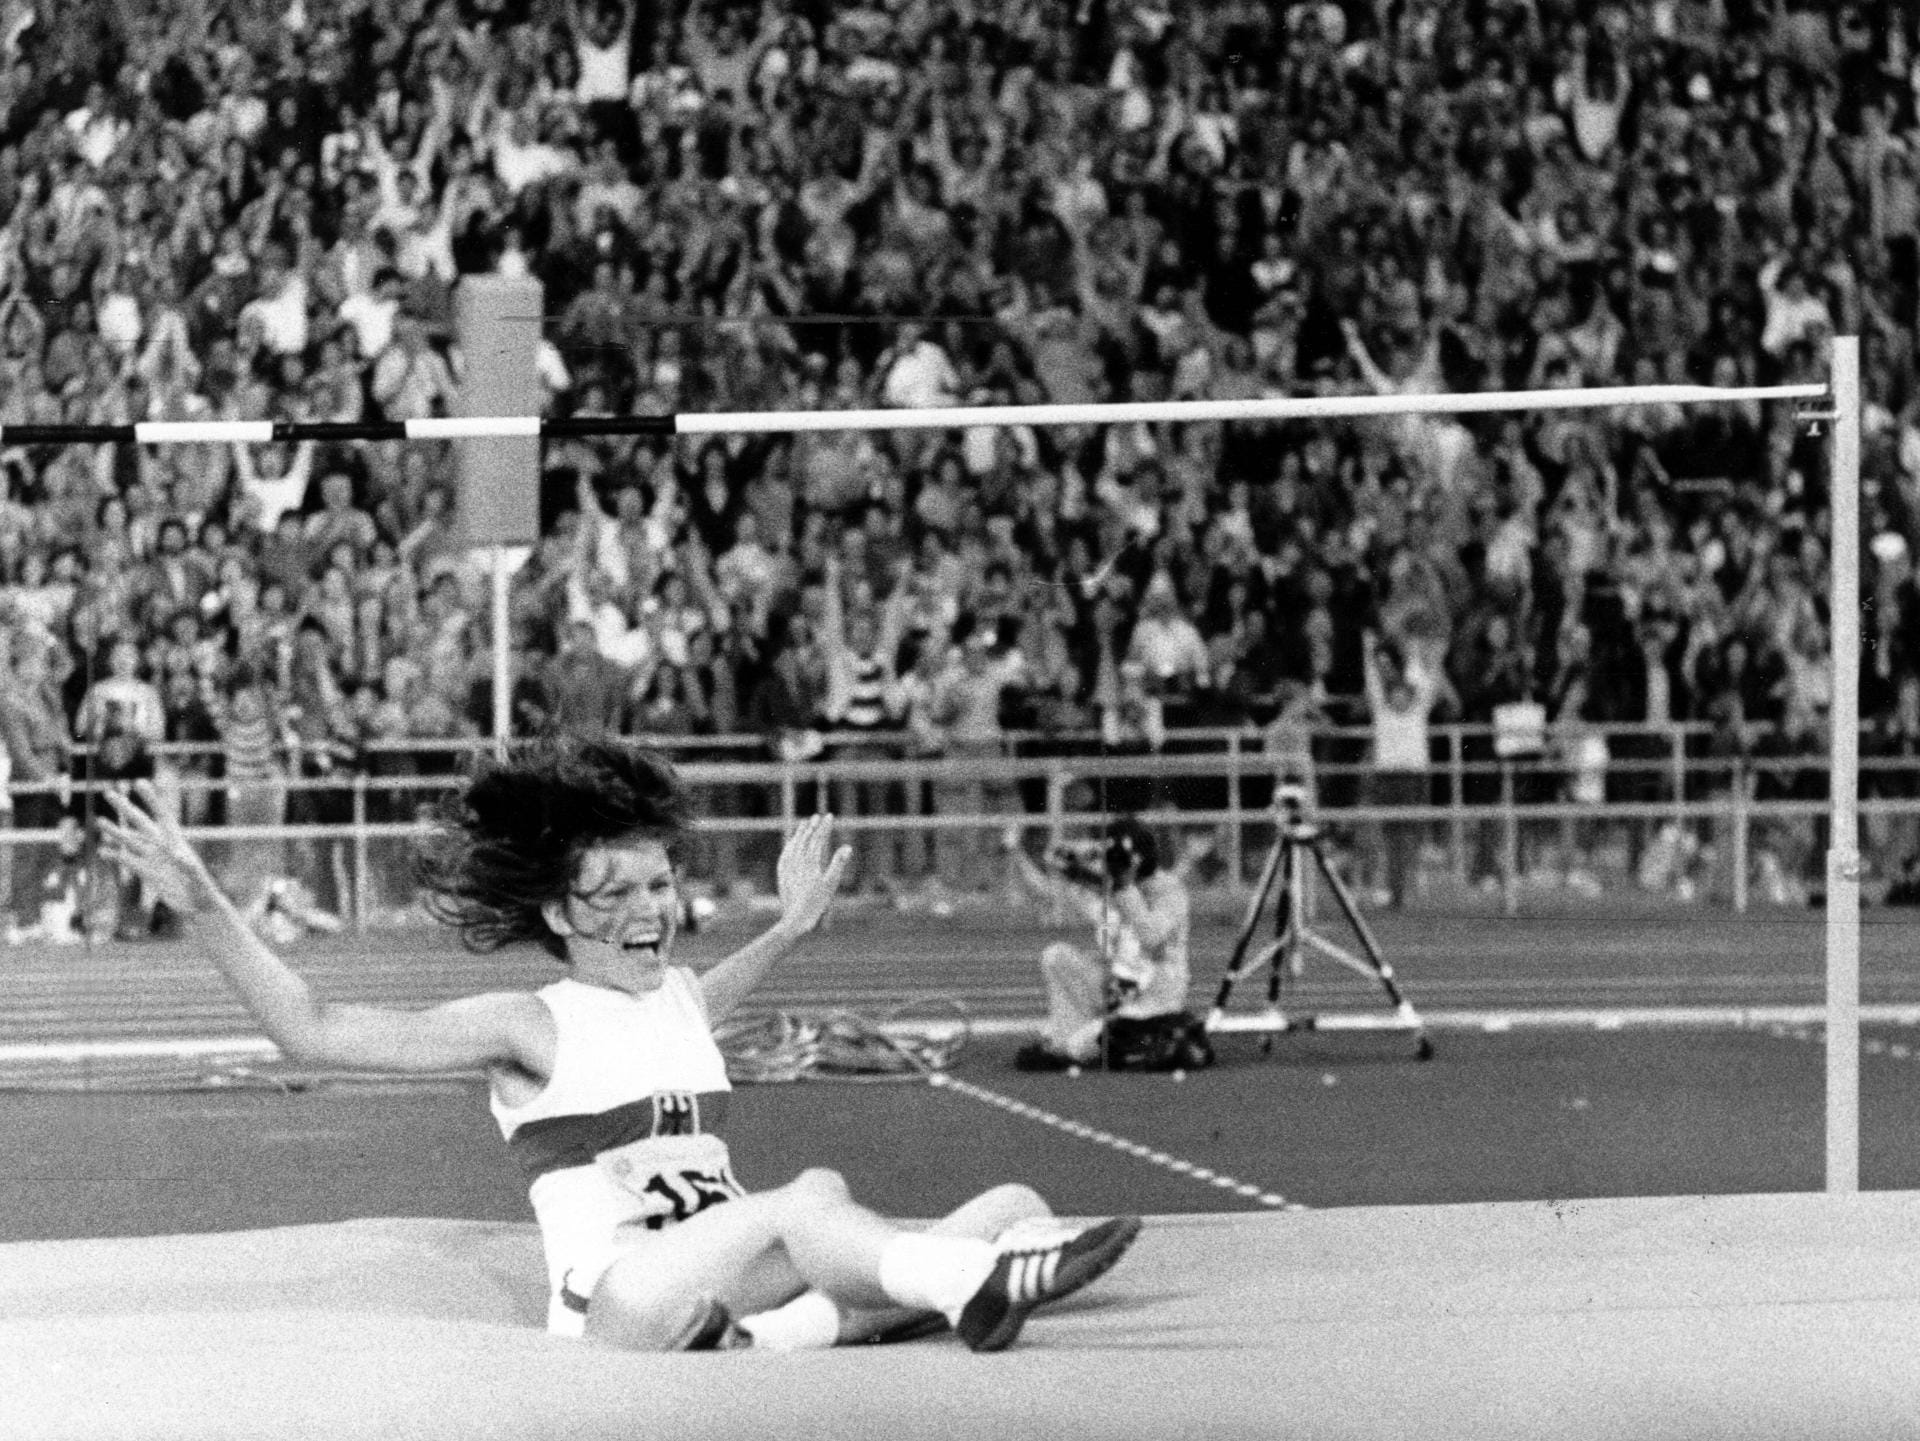 16 Jahre alt war Ulrike Meyfarth - und auf einmal Olympiasiegerin im Hochsprung, damals 1972 in München. Nach überquerten 1,92 Meter war die Sensation perfekt, die Zuschauer im Olympiastadion waren außer Rand und Band.